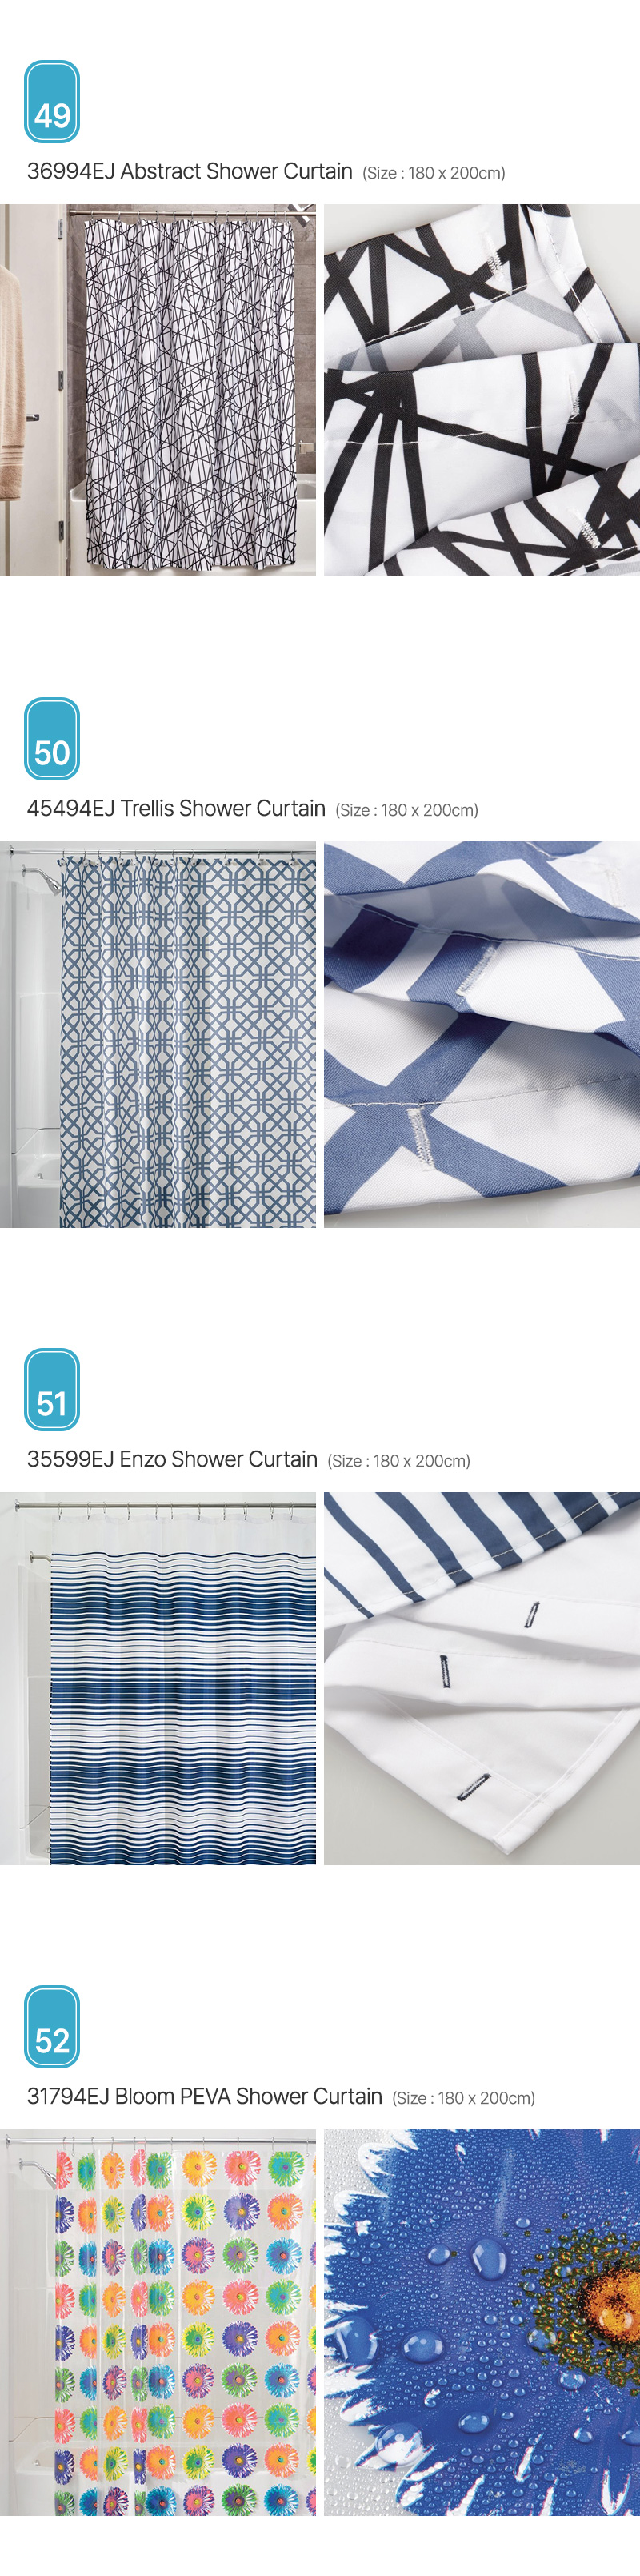 Aria_Shower-Curtain_13.jpg